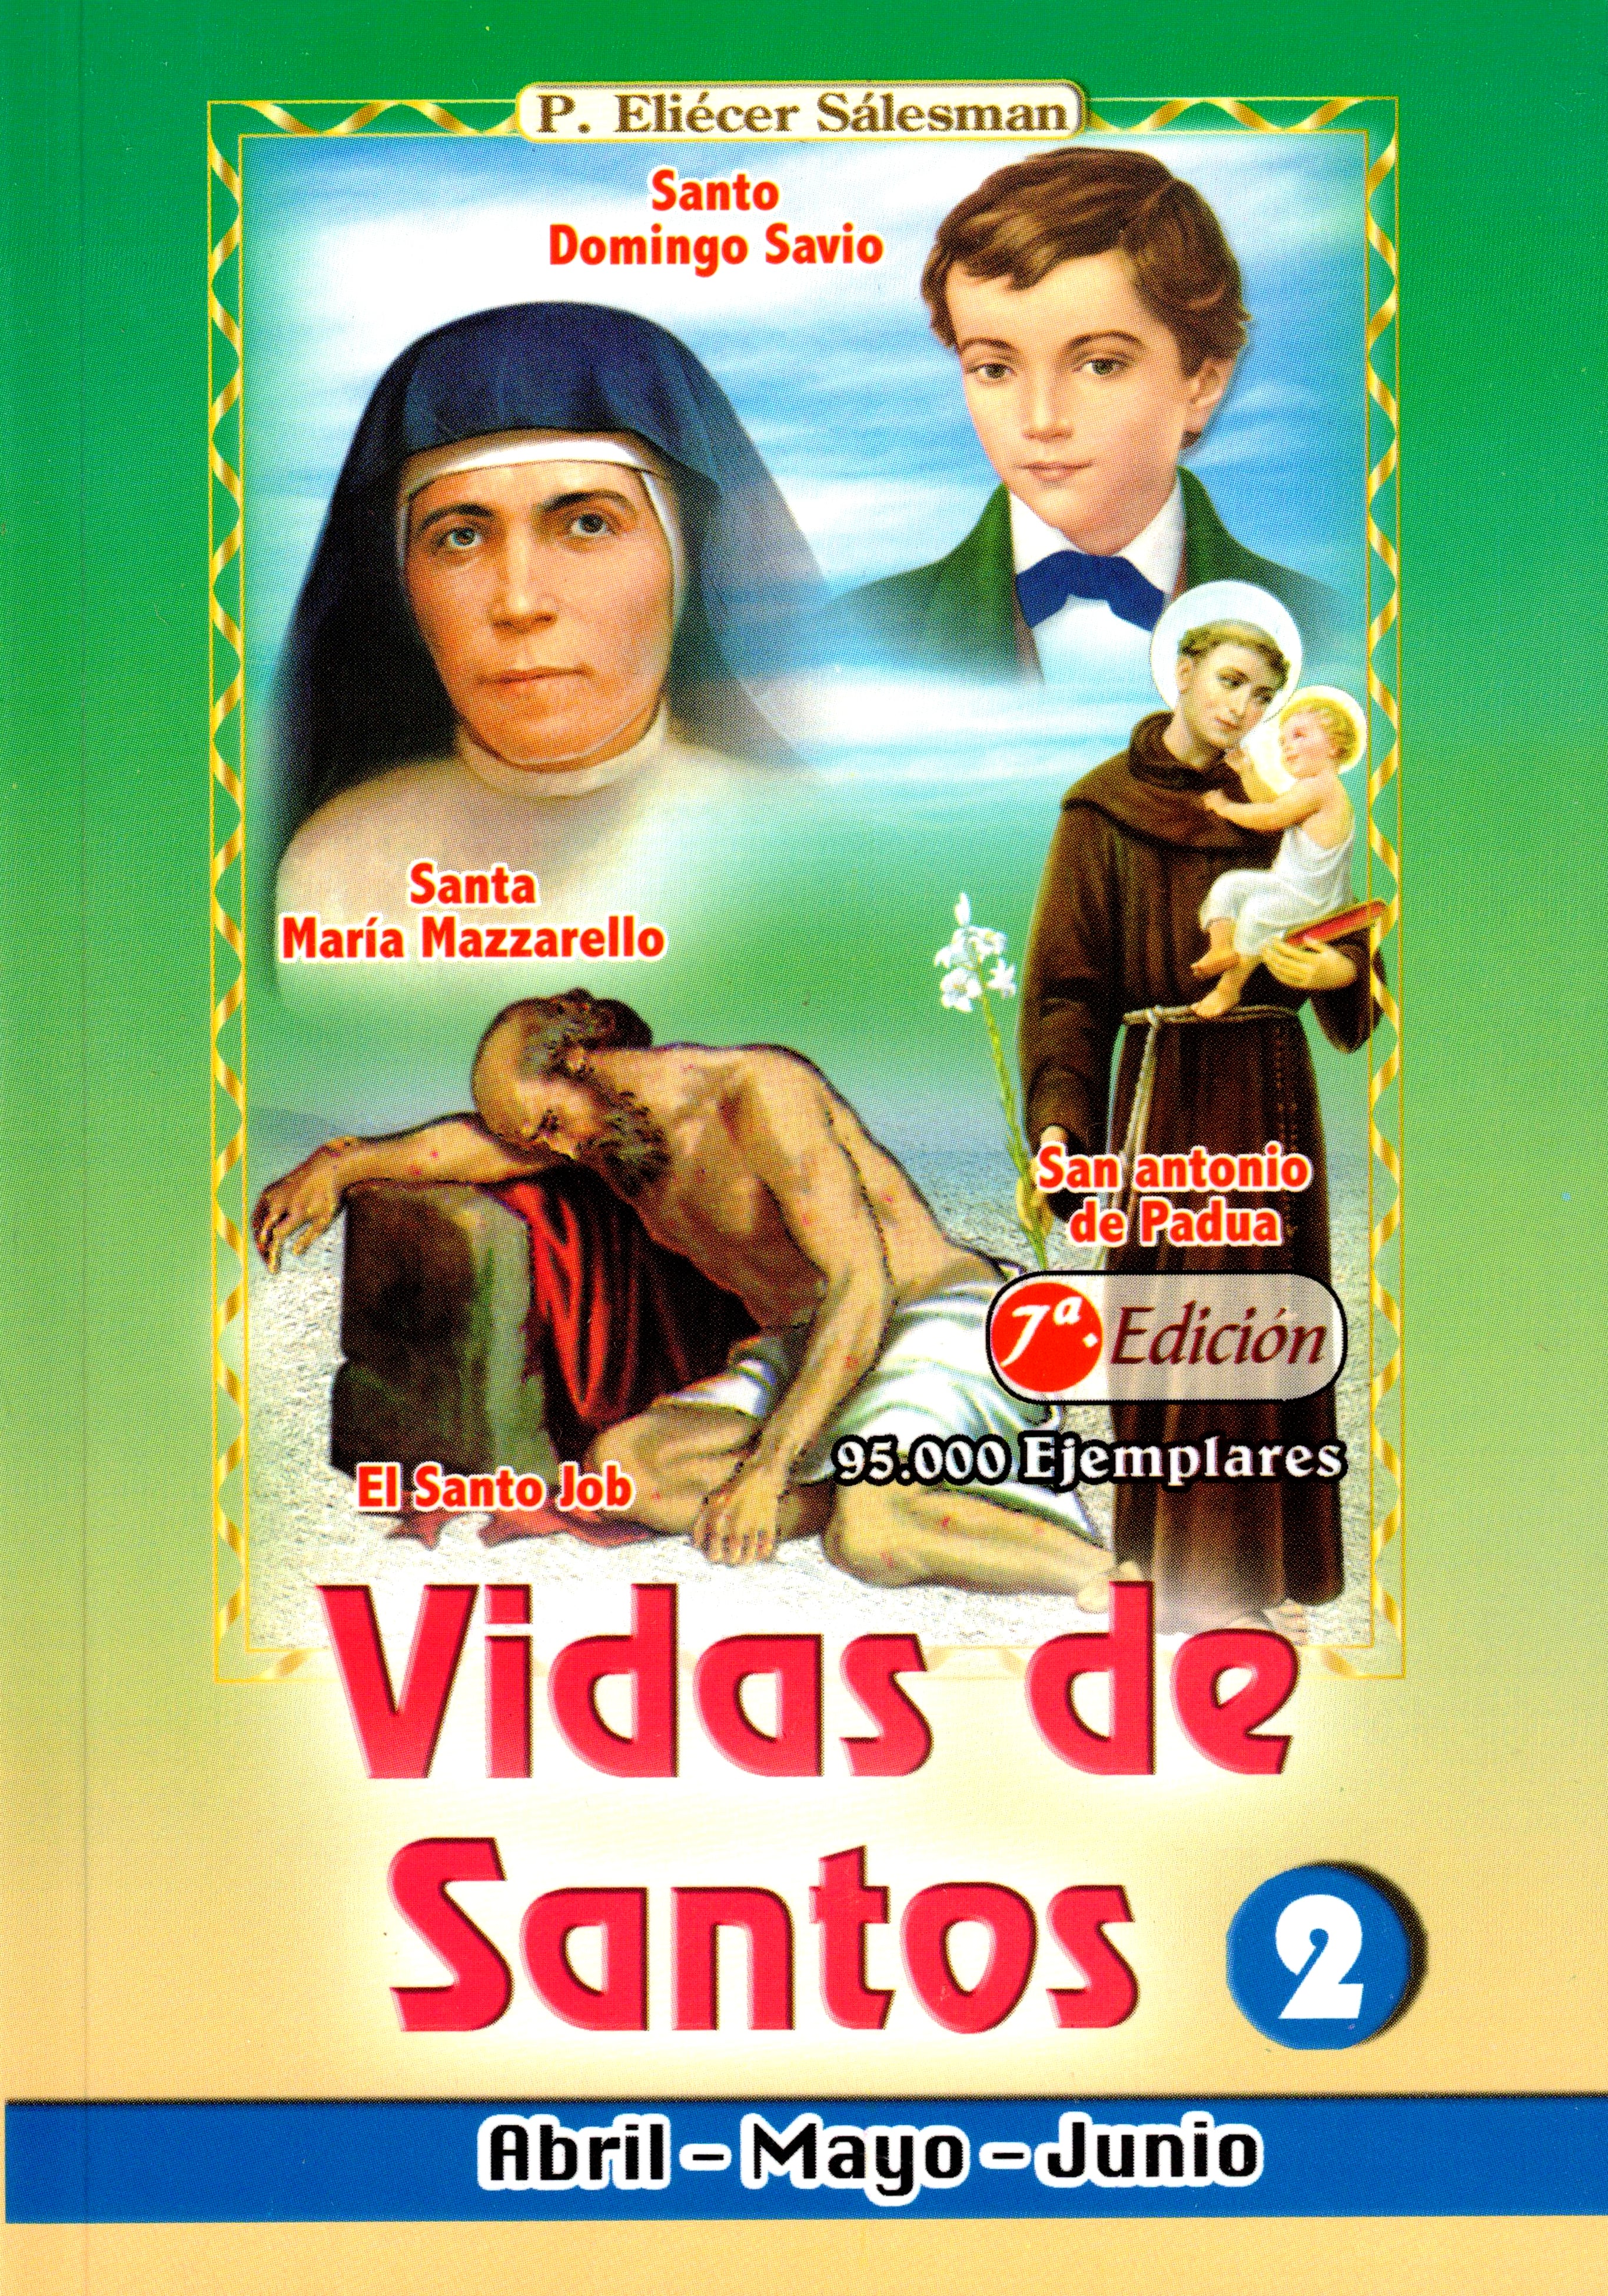 Vida de Santos 2 (Abril, Mayo y Junio)